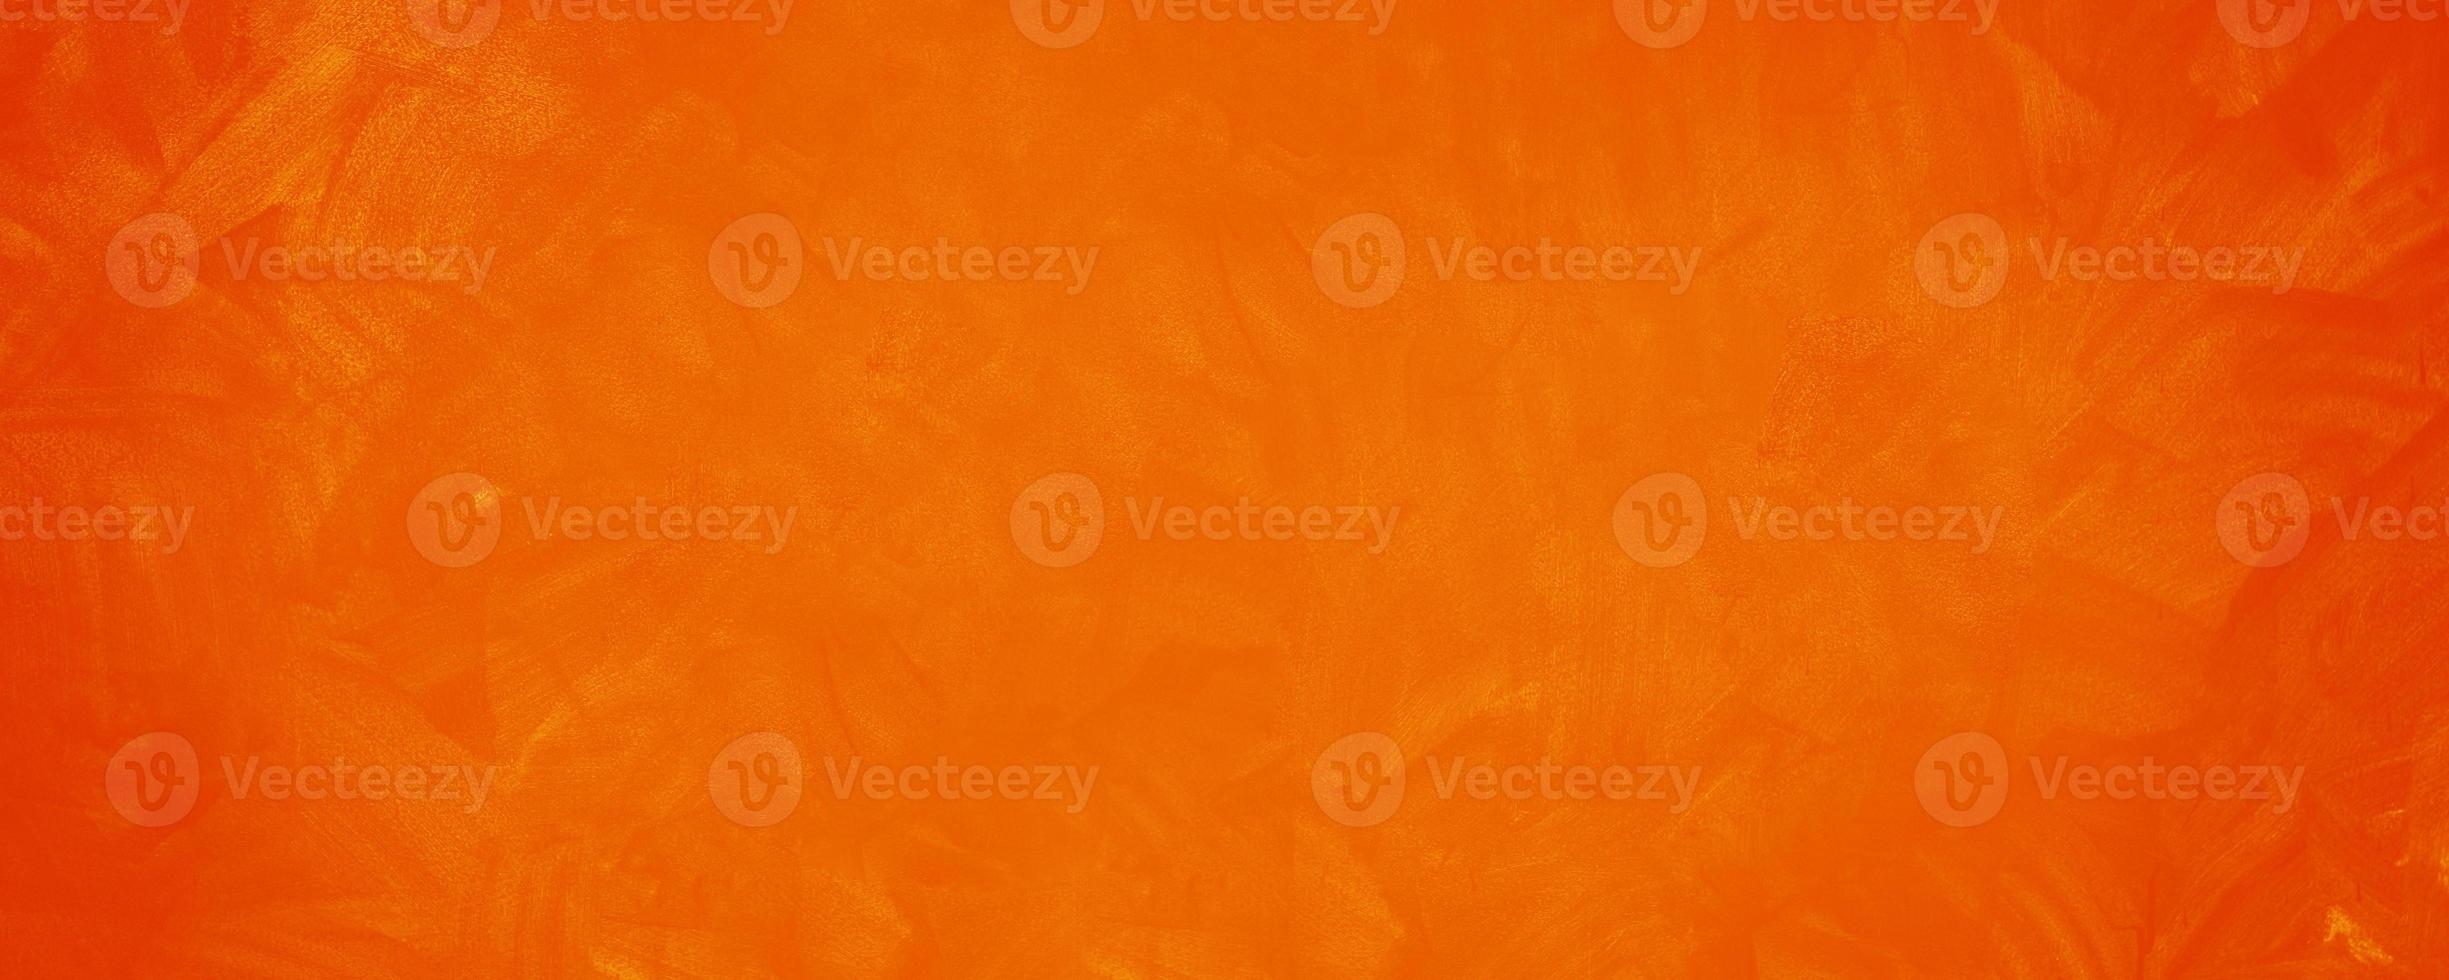 mörk orange cement textur vägg bakgrund foto